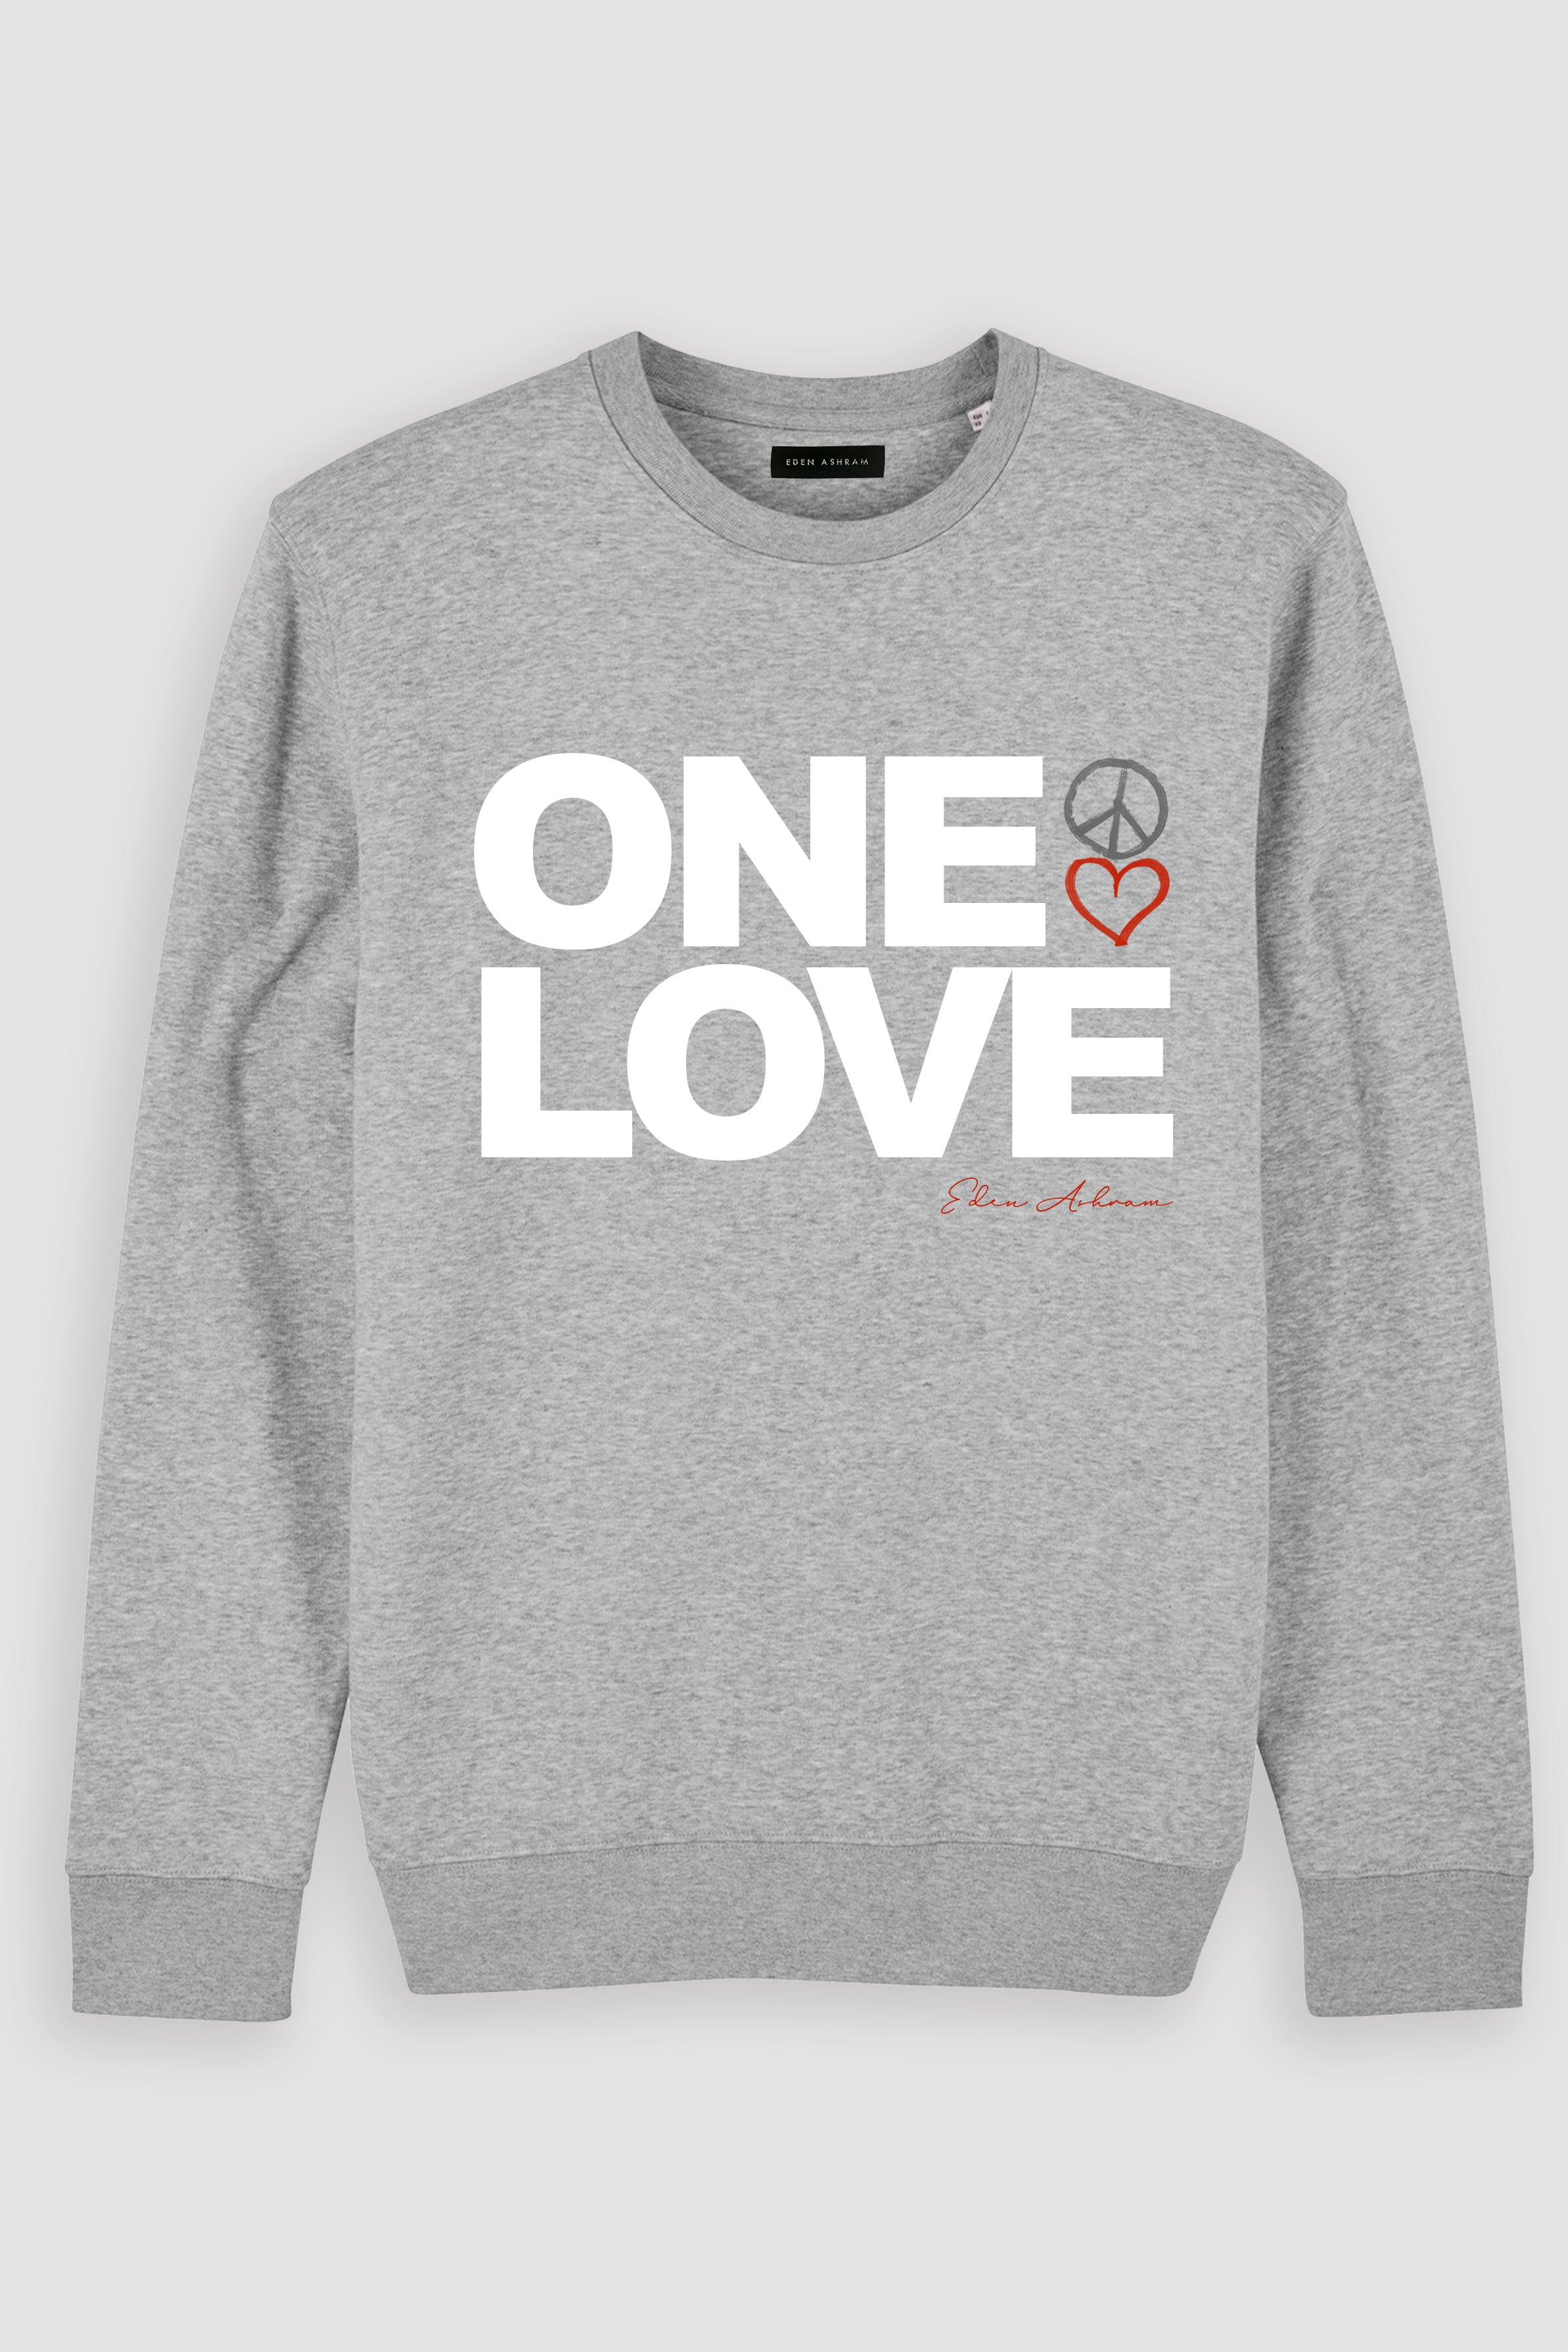 Eden Ashram One Love Premium Crew Neck Sweatshirt Heather Grey